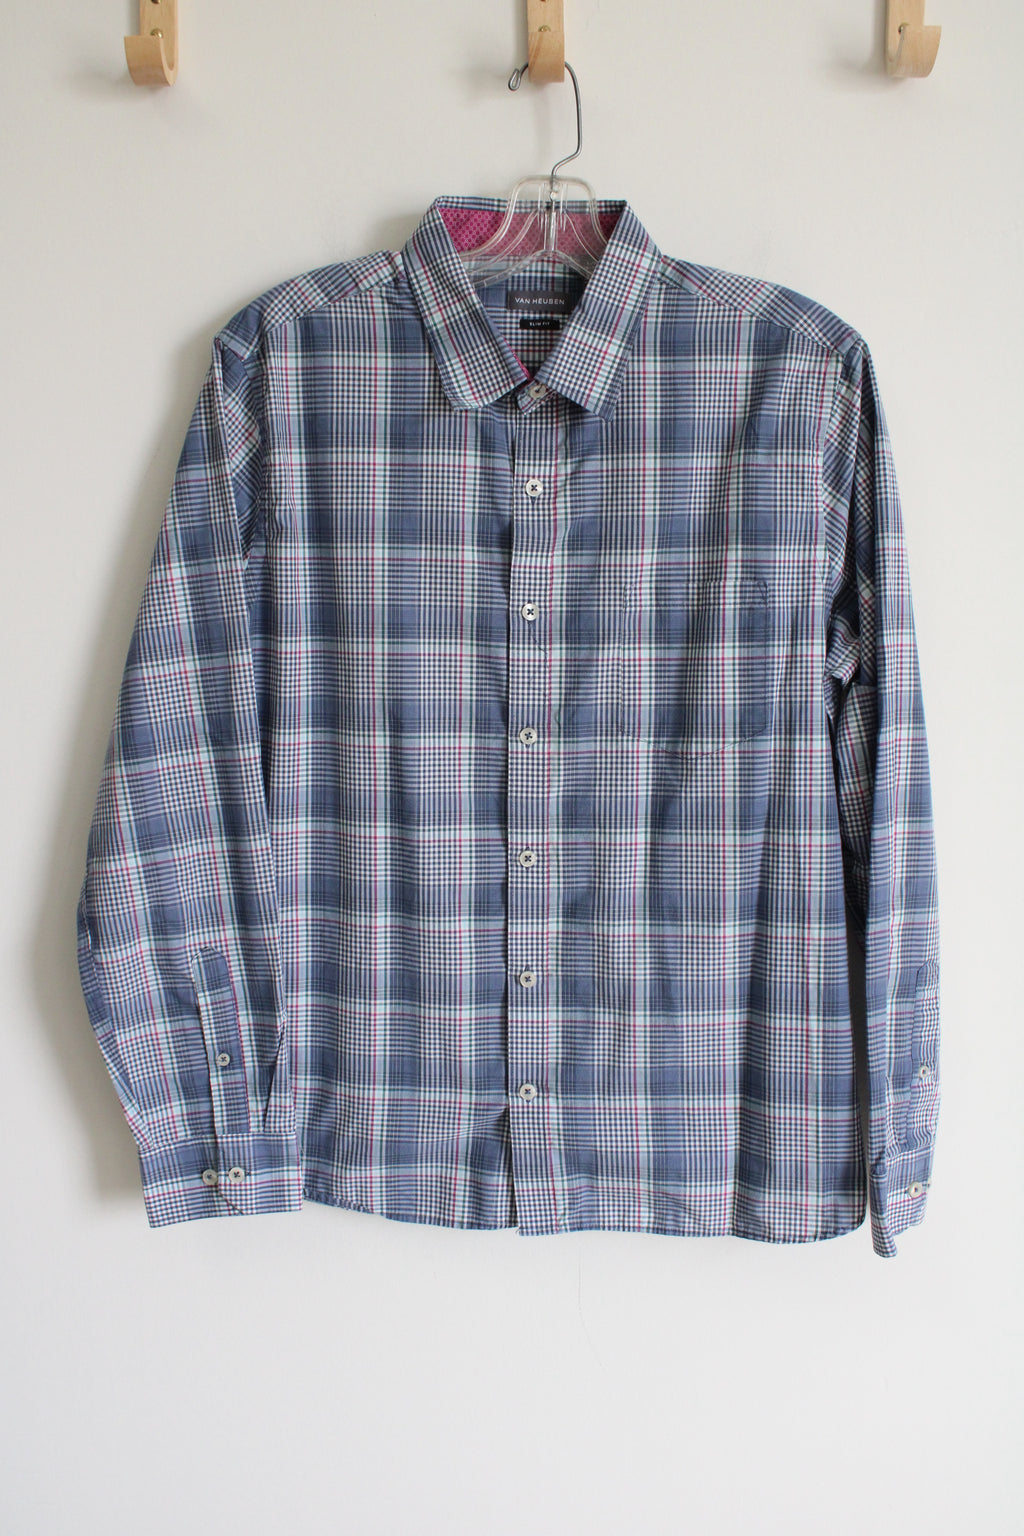 Van Heusen Blue Plaid Button Down Slim Fit Shirt | L 16-16 1/2